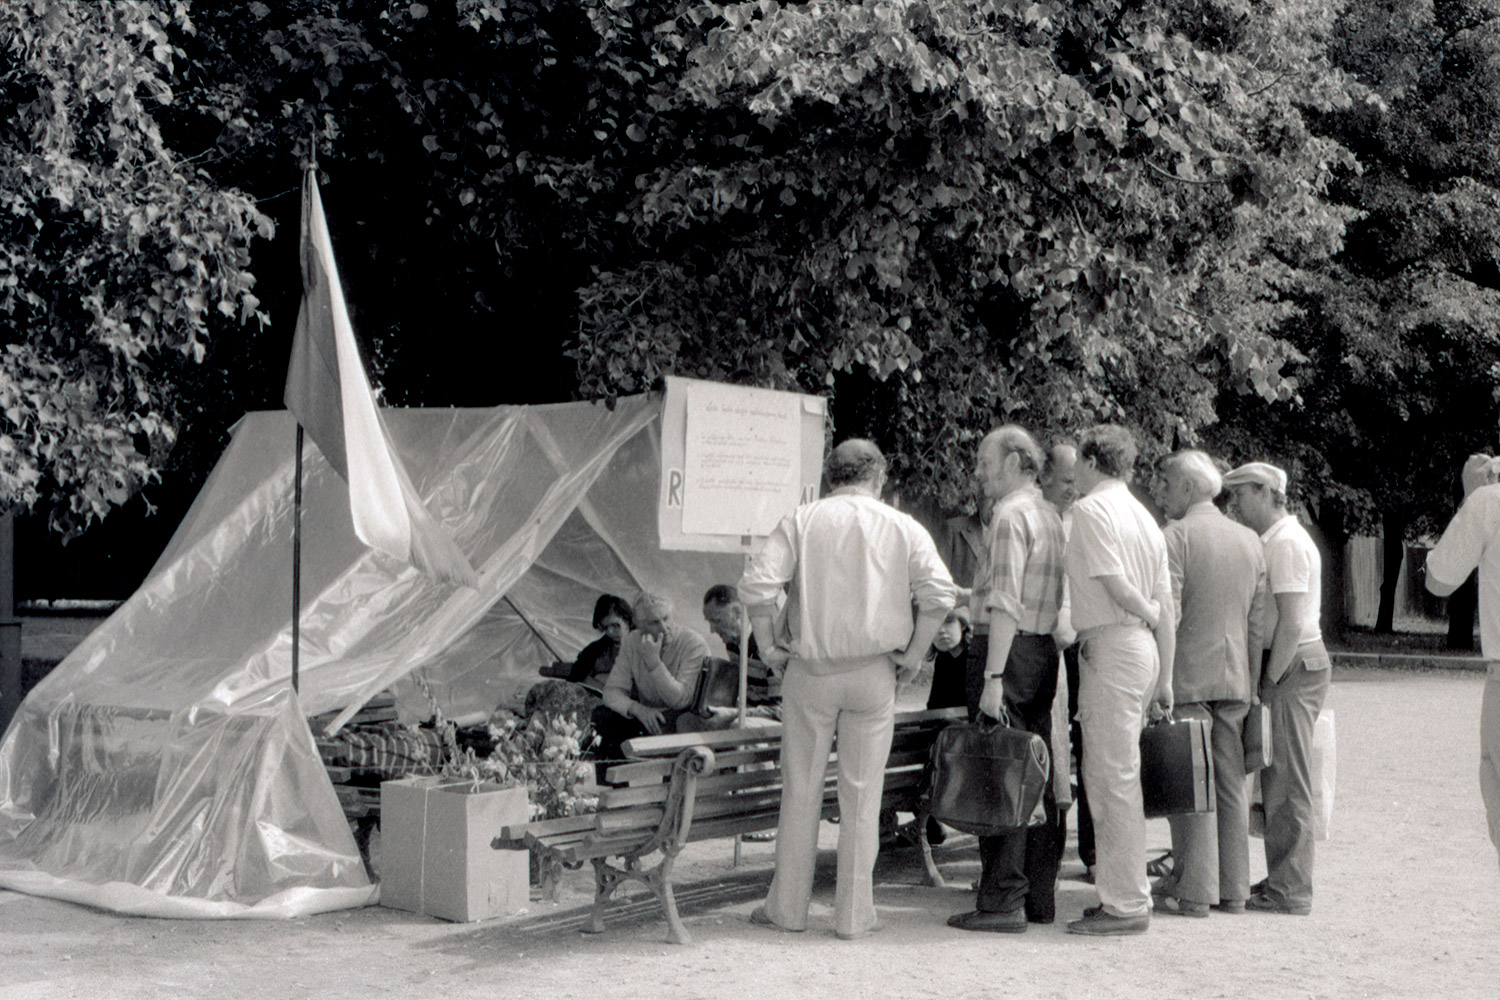 1989 m. V. Milvydo bado streikas prie LKP CK rūmų protestuojant prieš Molotovo–Ribbentropo paktą ir jo pasekmes. Žmonės prie badautojų palapinės skaito plakatą, ant kurio užrašyta: „Šia bado akcija reikalaujame, kad: 1. Be vilkinimo būtų svarstomi Molotovo–Ribbentropo pakto slaptieji dokumentai. 2. Slaptieji dokumentai turi būti pripažinti neteisėtais ir negaliojančiais nuo pat jų pasirašymo dienos ir likviduotos jų pasekmės. 3. Paskelbti galiojančia 1920 m. liepos 12 d. Lietuvos ir Tarybų Rusijos vyriausybių pasirašytą Taikos sutartį.“ LCVA, fotografijos autorius Viktoras Kapočius